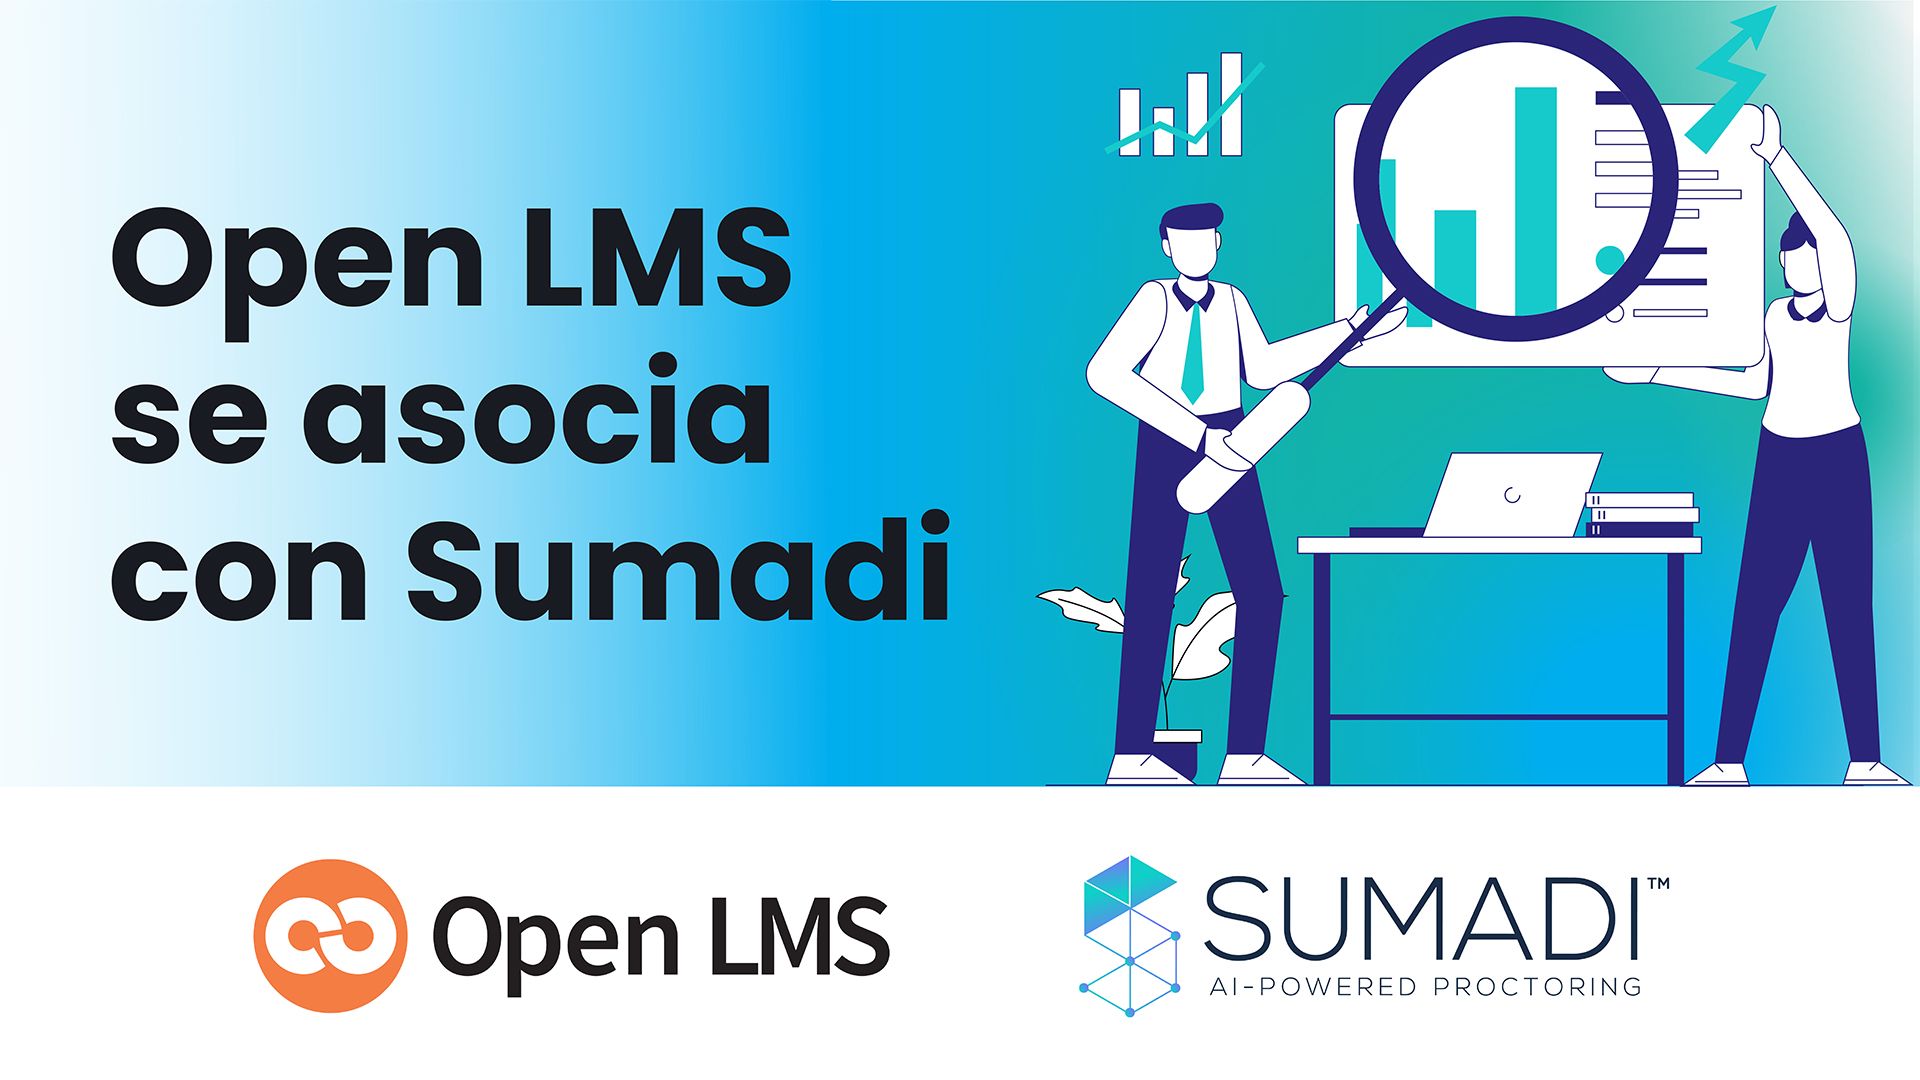 Open LMS se asocia con Sumadi, una tecnología líder en la supervisión de evaluaciones en línea